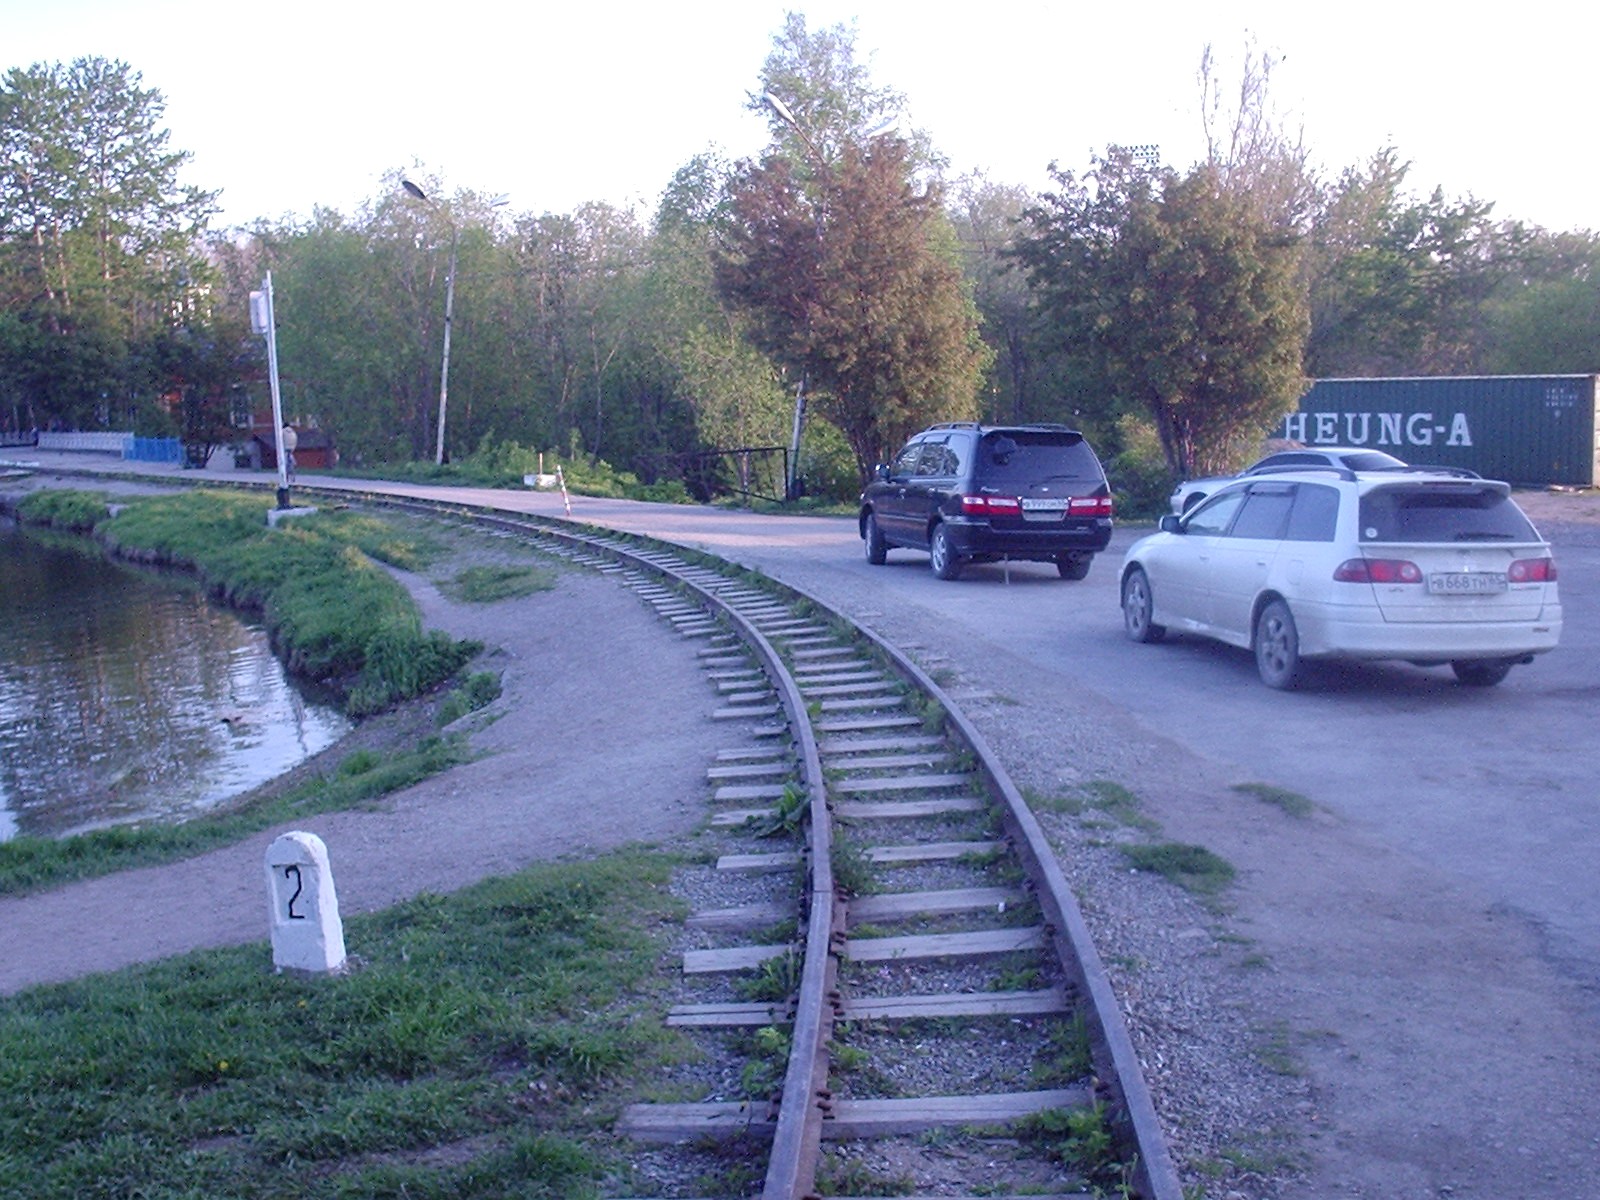 Южно-Сахалинская (Малая Сахалинская) детская железная дорога — фотографии, сделанные в 2006 году (часть 2)